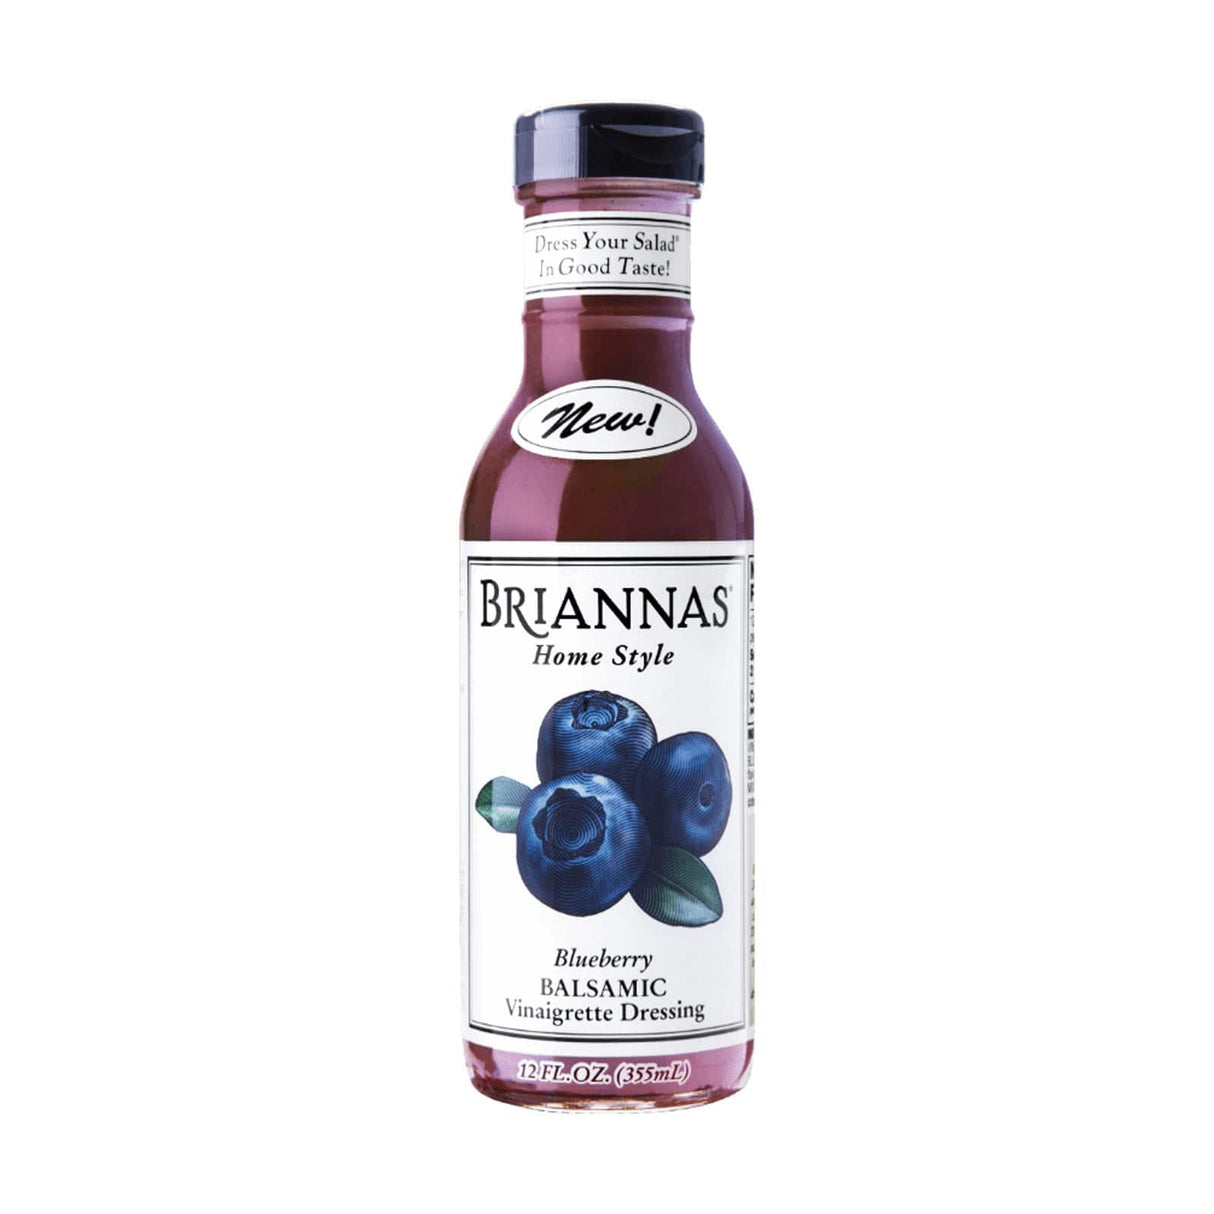 Briannas Blueberry Balsamic Vinaigrette Dressing